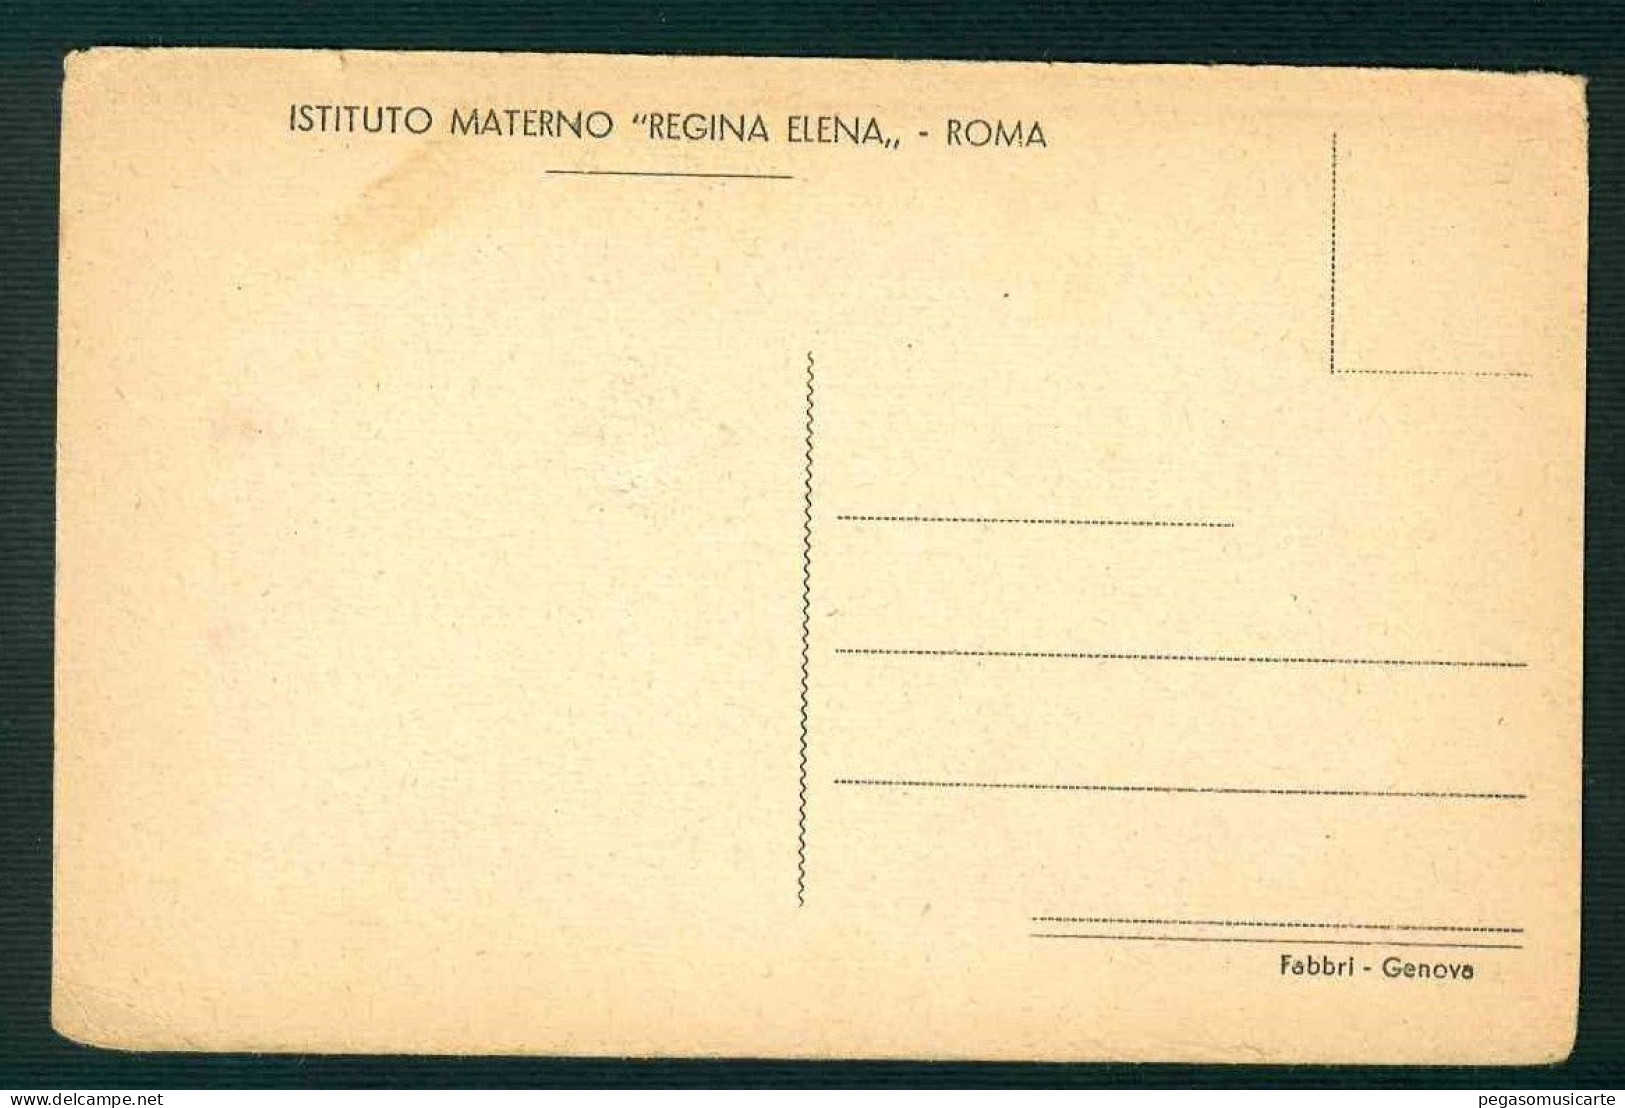 BA298 - ISTITUTO MATERNO REGINA ELENA - ROMA - CAMERA PARTICOLARE 1930 CIRCA - Enseignement, Ecoles Et Universités